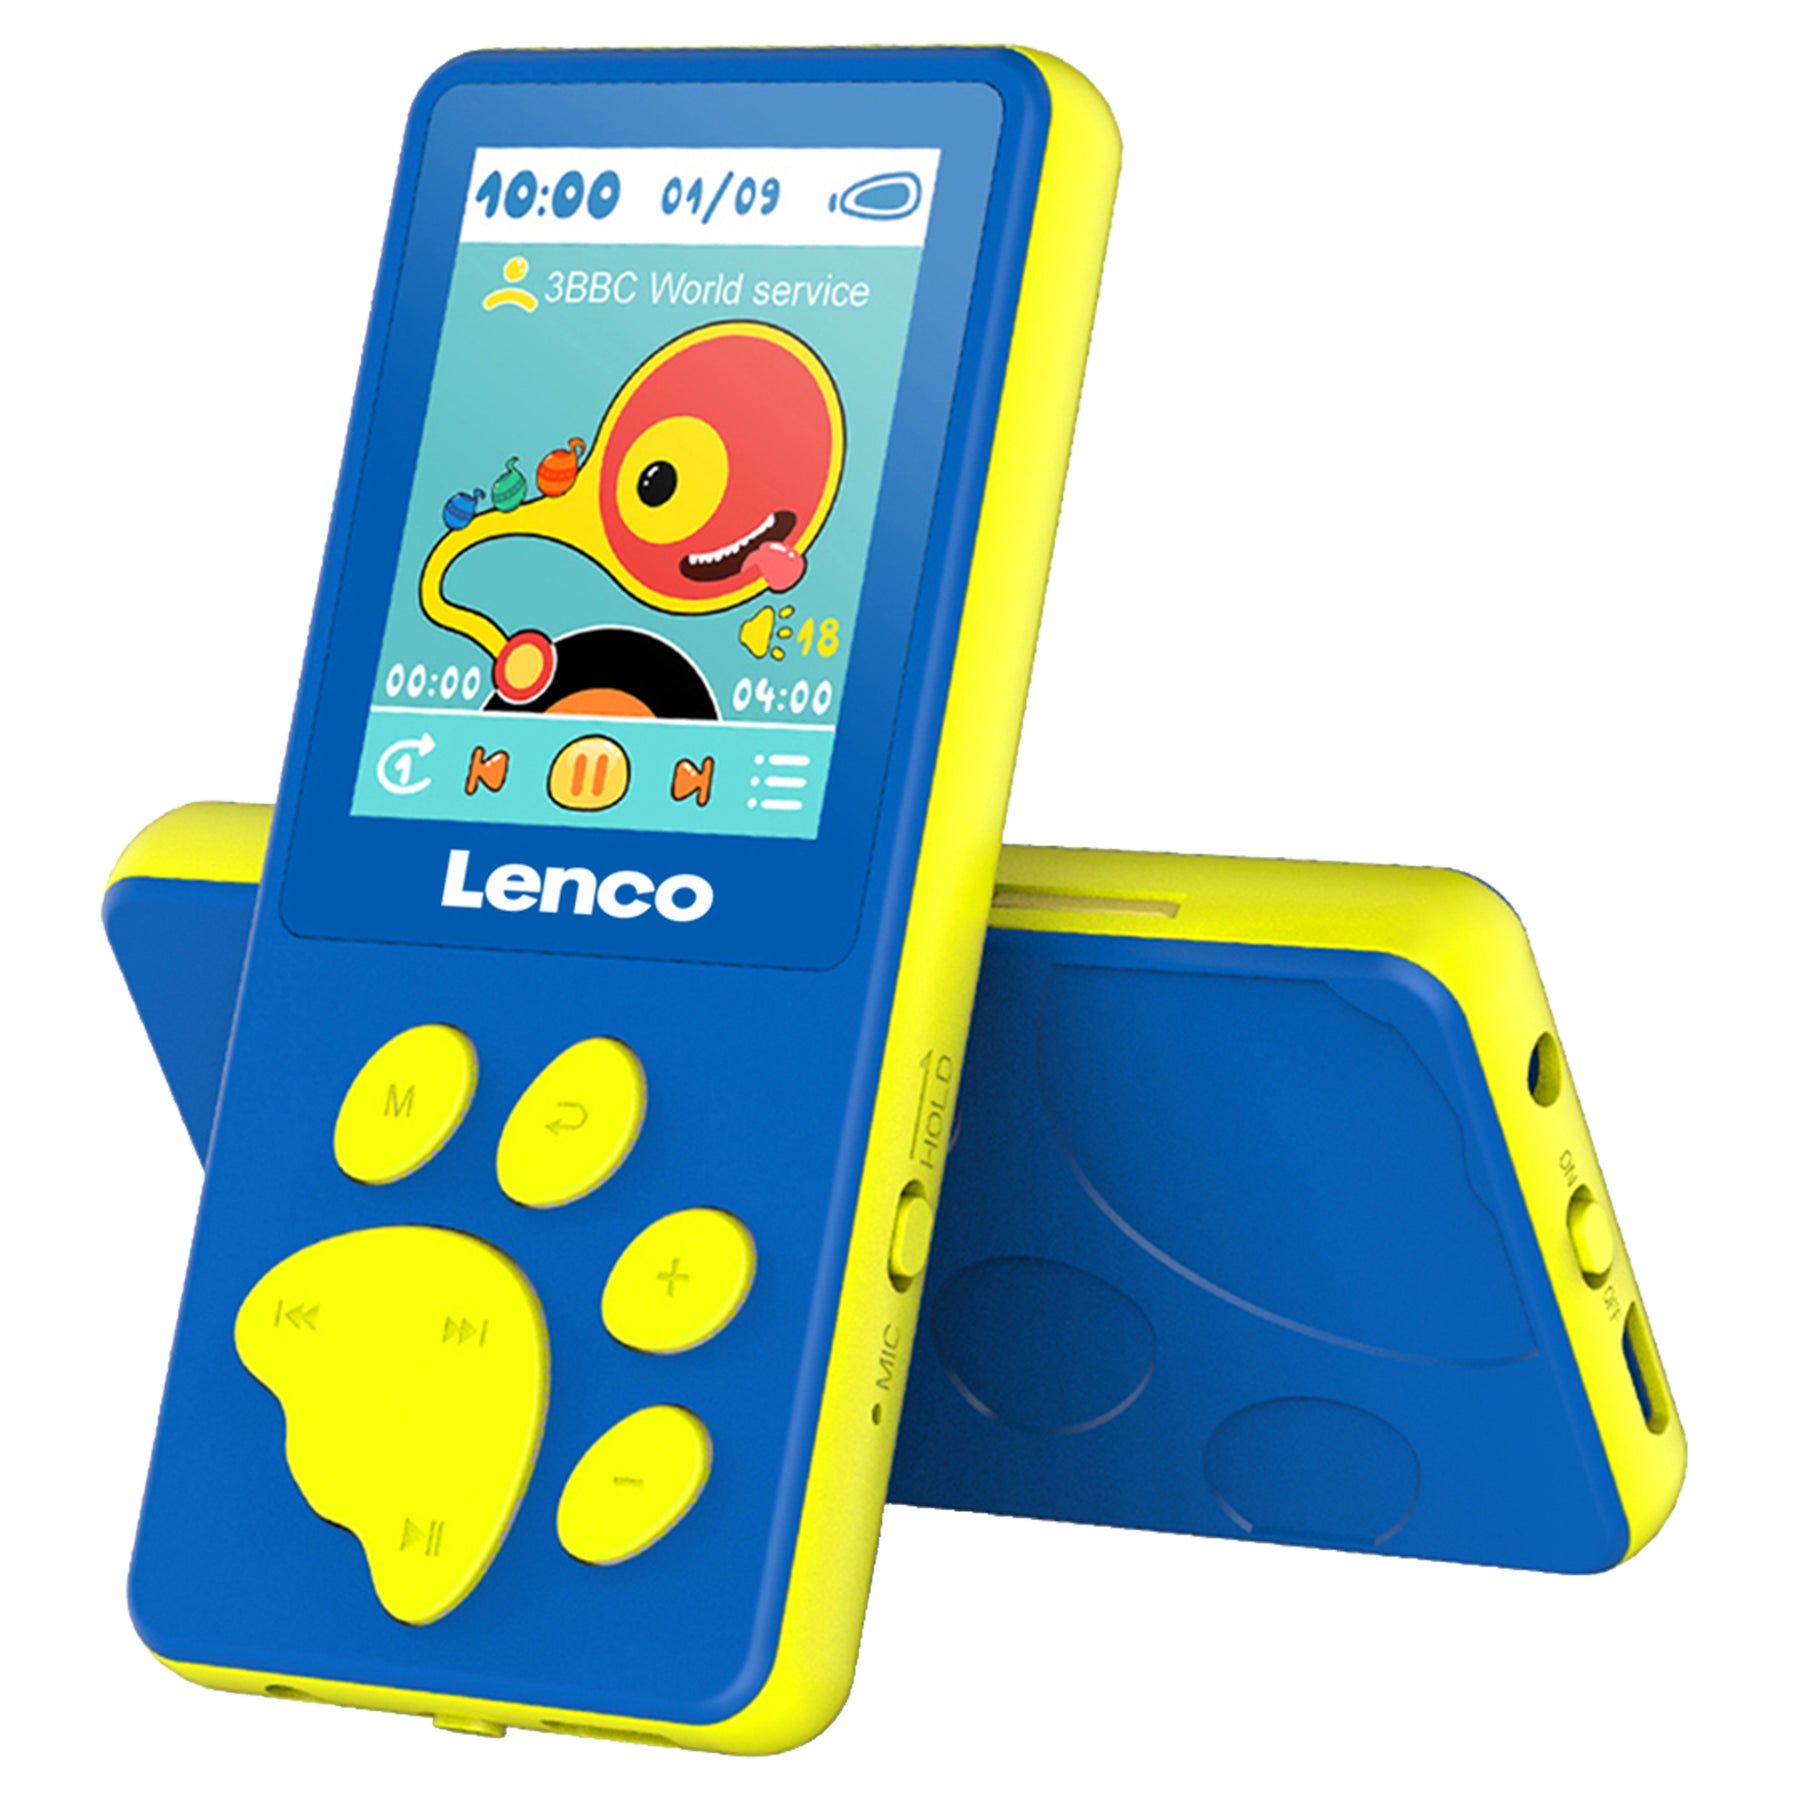 Lenco Xemio-560BU kopen? Officiële de Nu Webshop | in Lenco